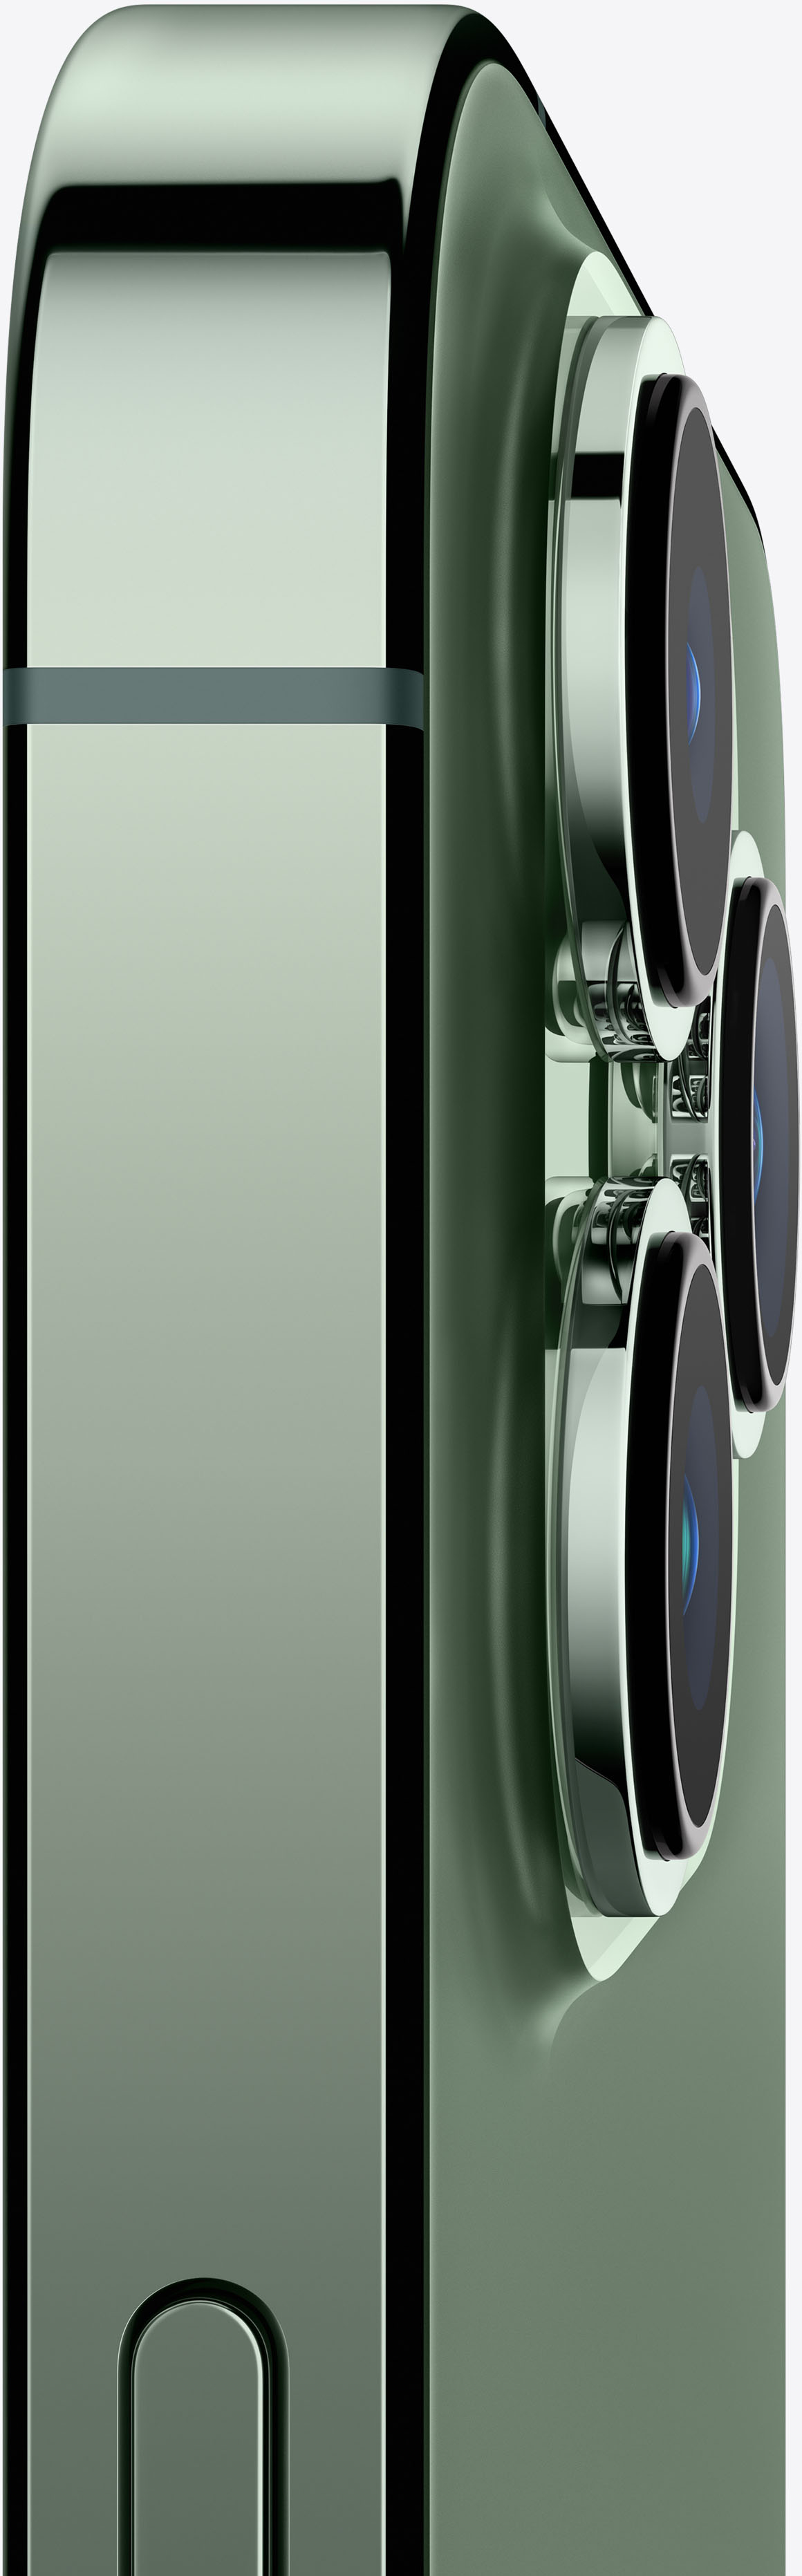 Apple iPhone 13, 256 GB, color medianoche, AT&T (reacondicionado)